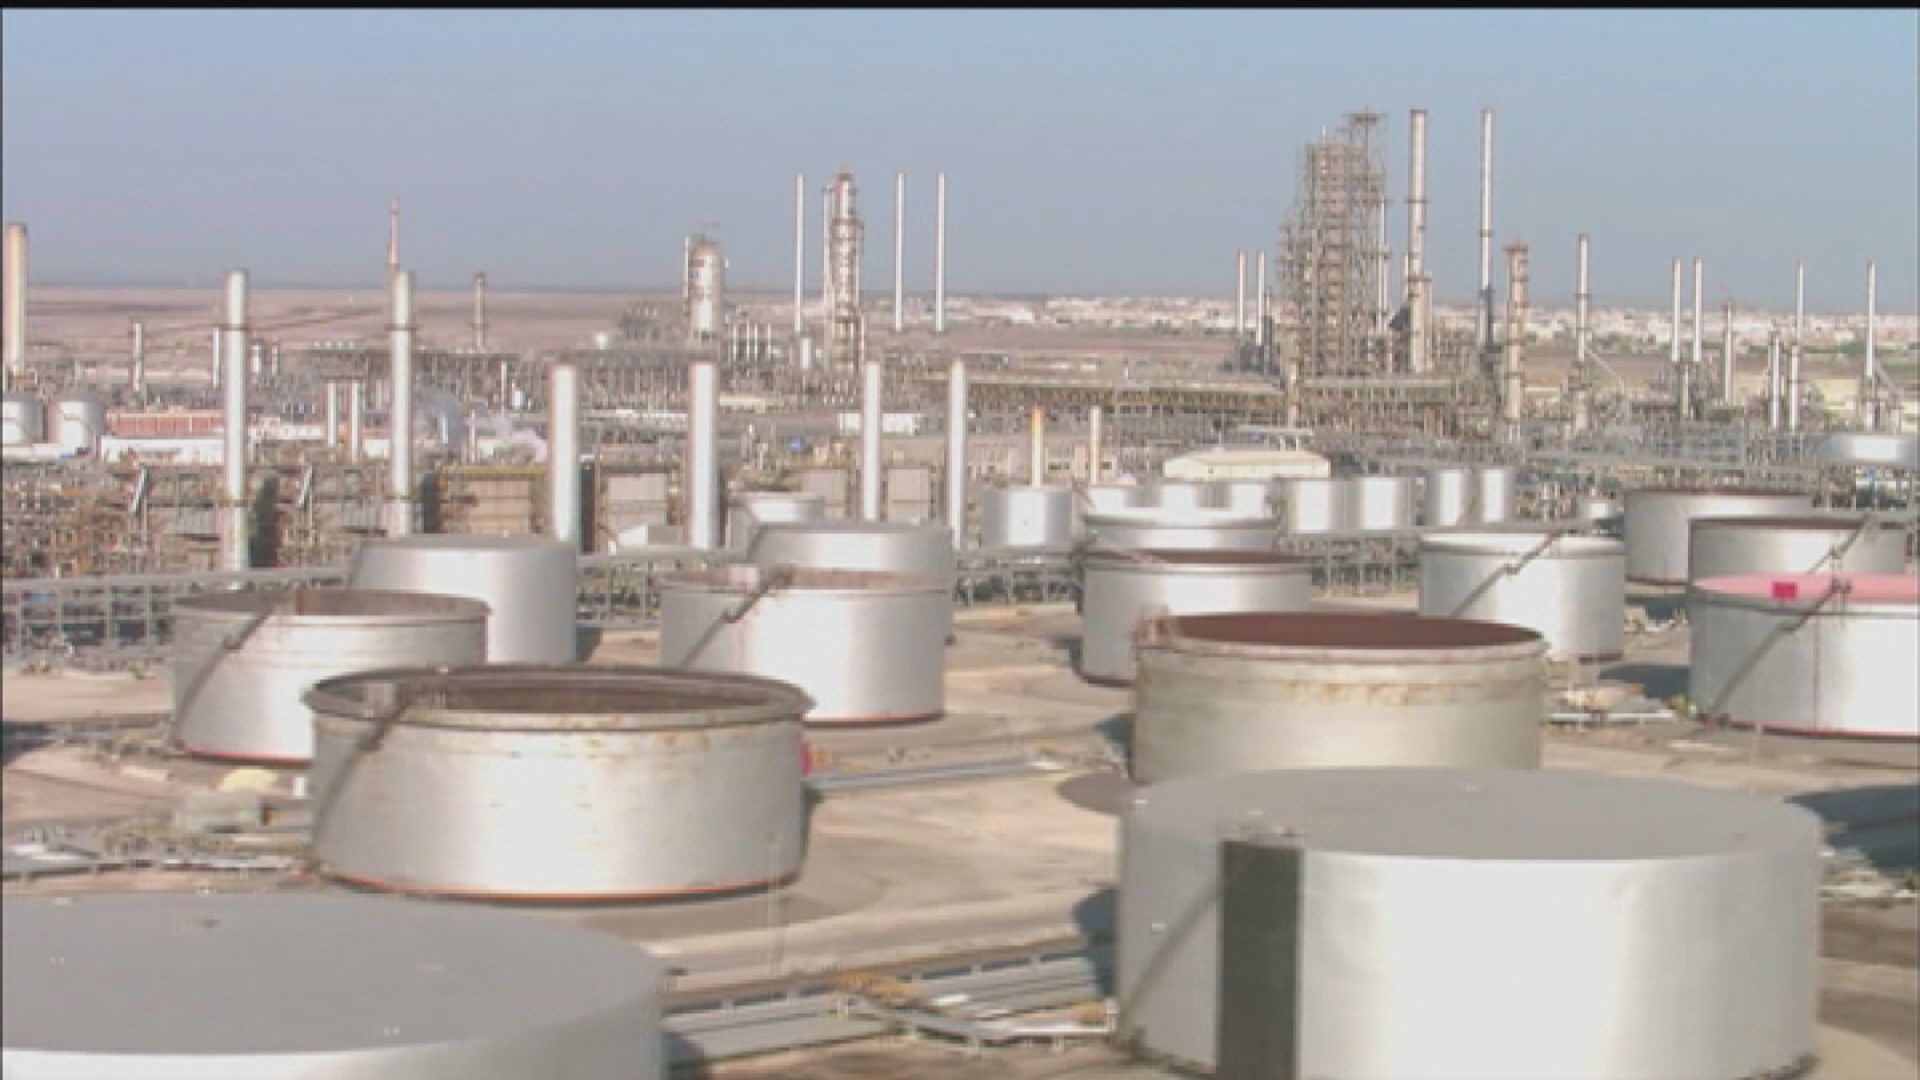 【能源轉型】沙特阿美警告:投資不足釀石油供應危機